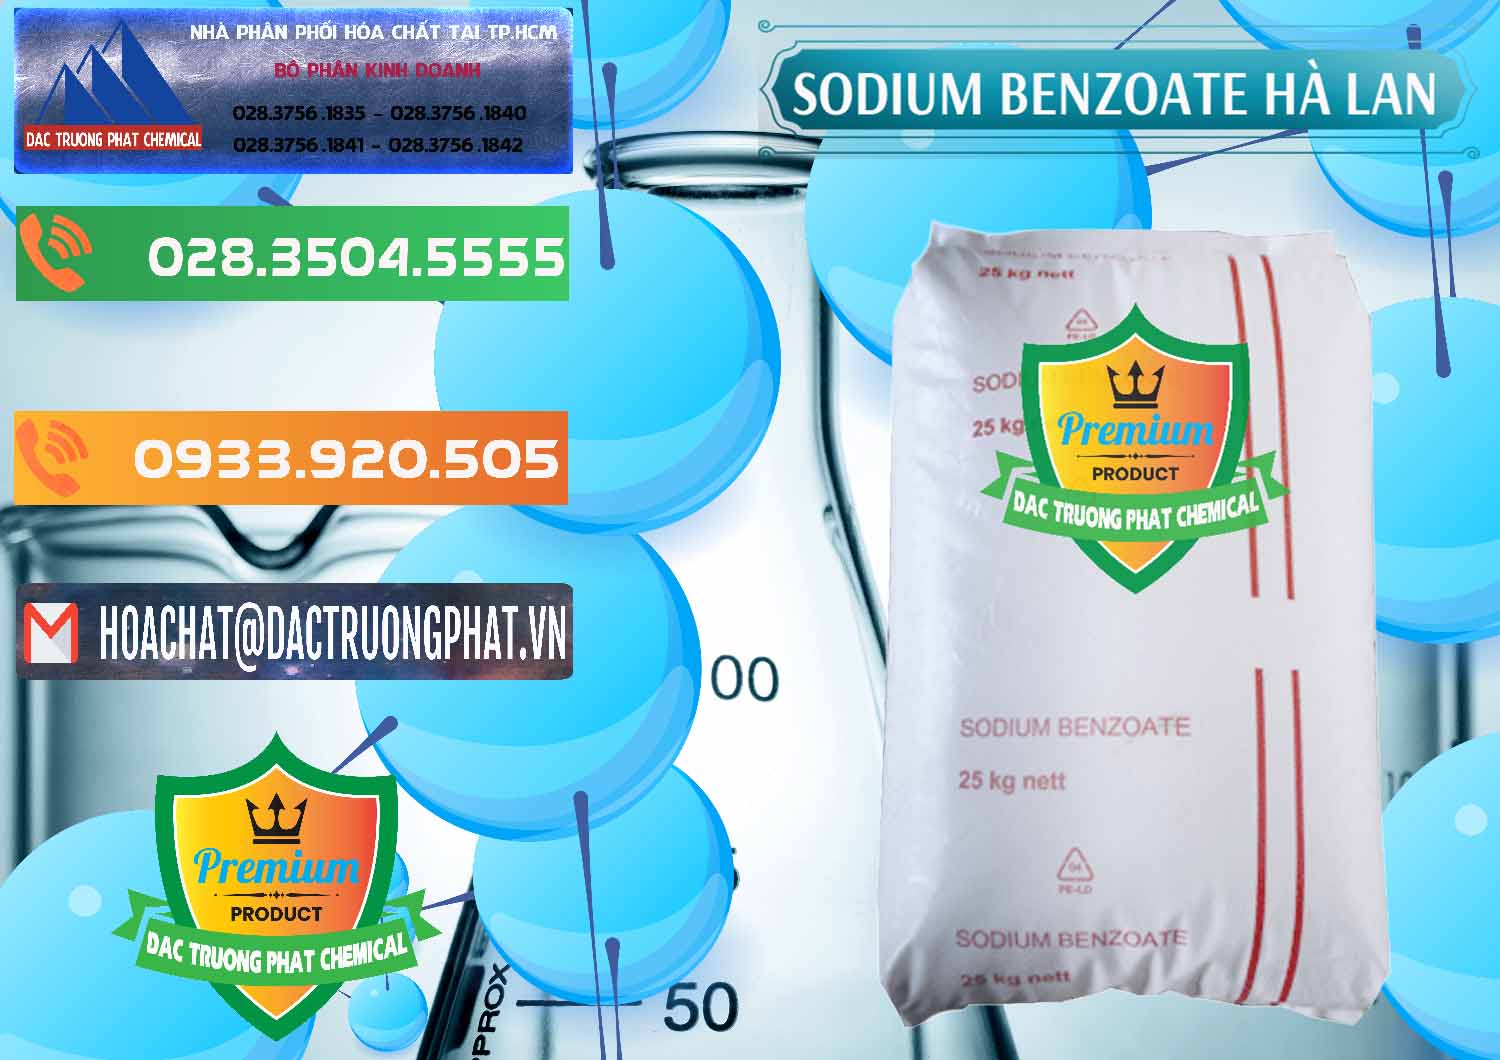 Cty nhập khẩu _ bán Sodium Benzoate - Mốc Bột Chữ Cam Hà Lan Netherlands - 0360 - Công ty bán ( phân phối ) hóa chất tại TP.HCM - hoachatxulynuoc.com.vn